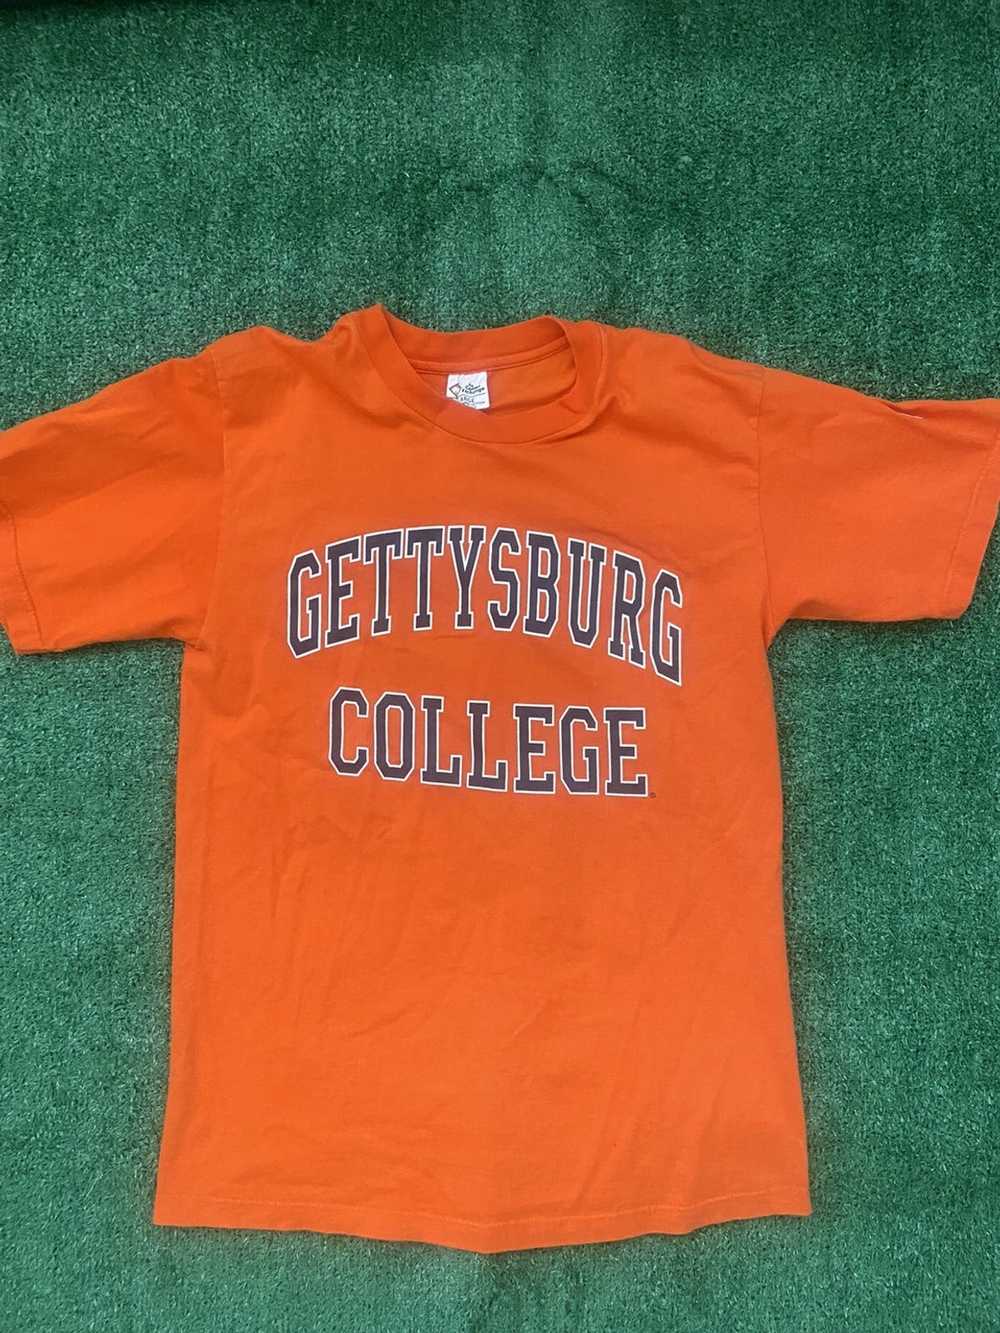 Vintage Vintage Gettysburg College Tee - image 1